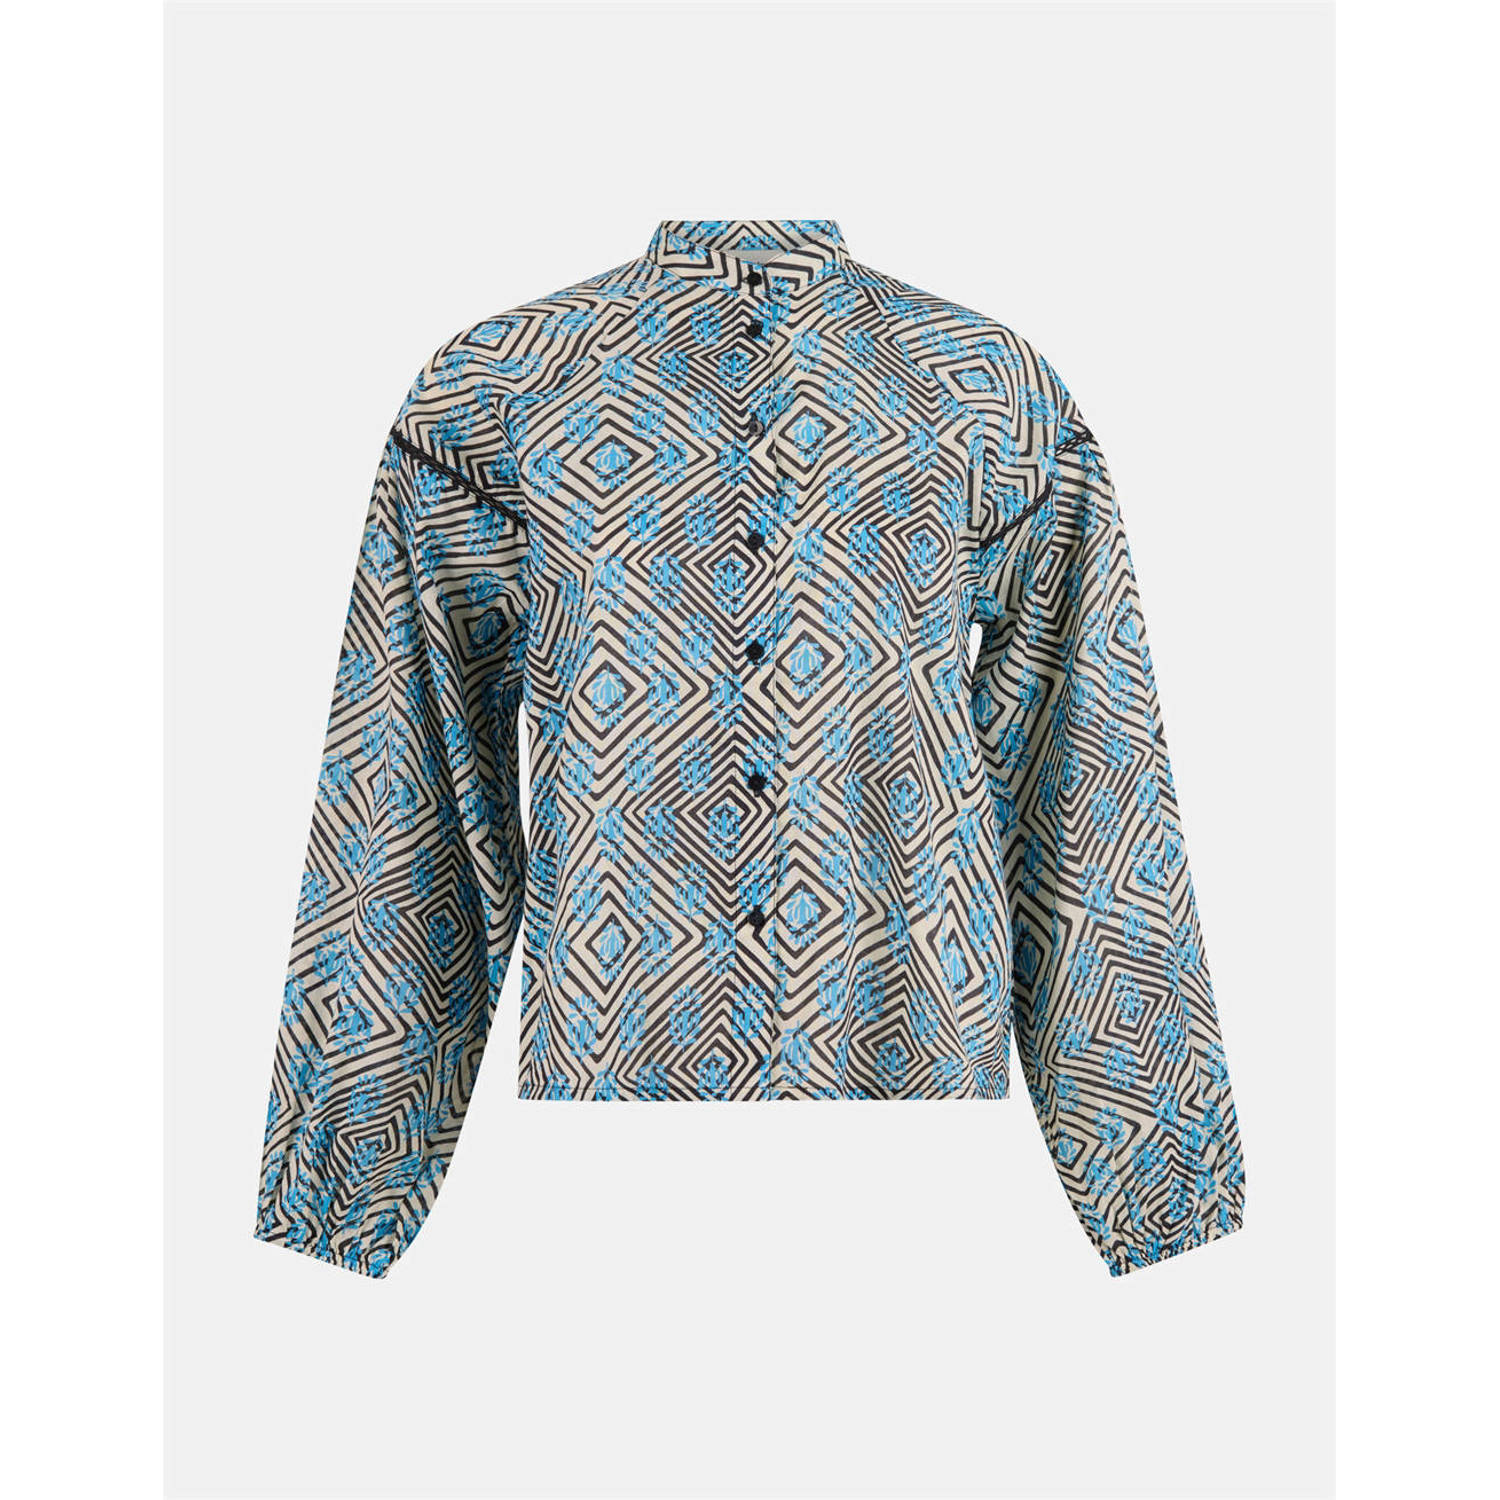 Shoeby blouse met all over print blauw zwart ecru